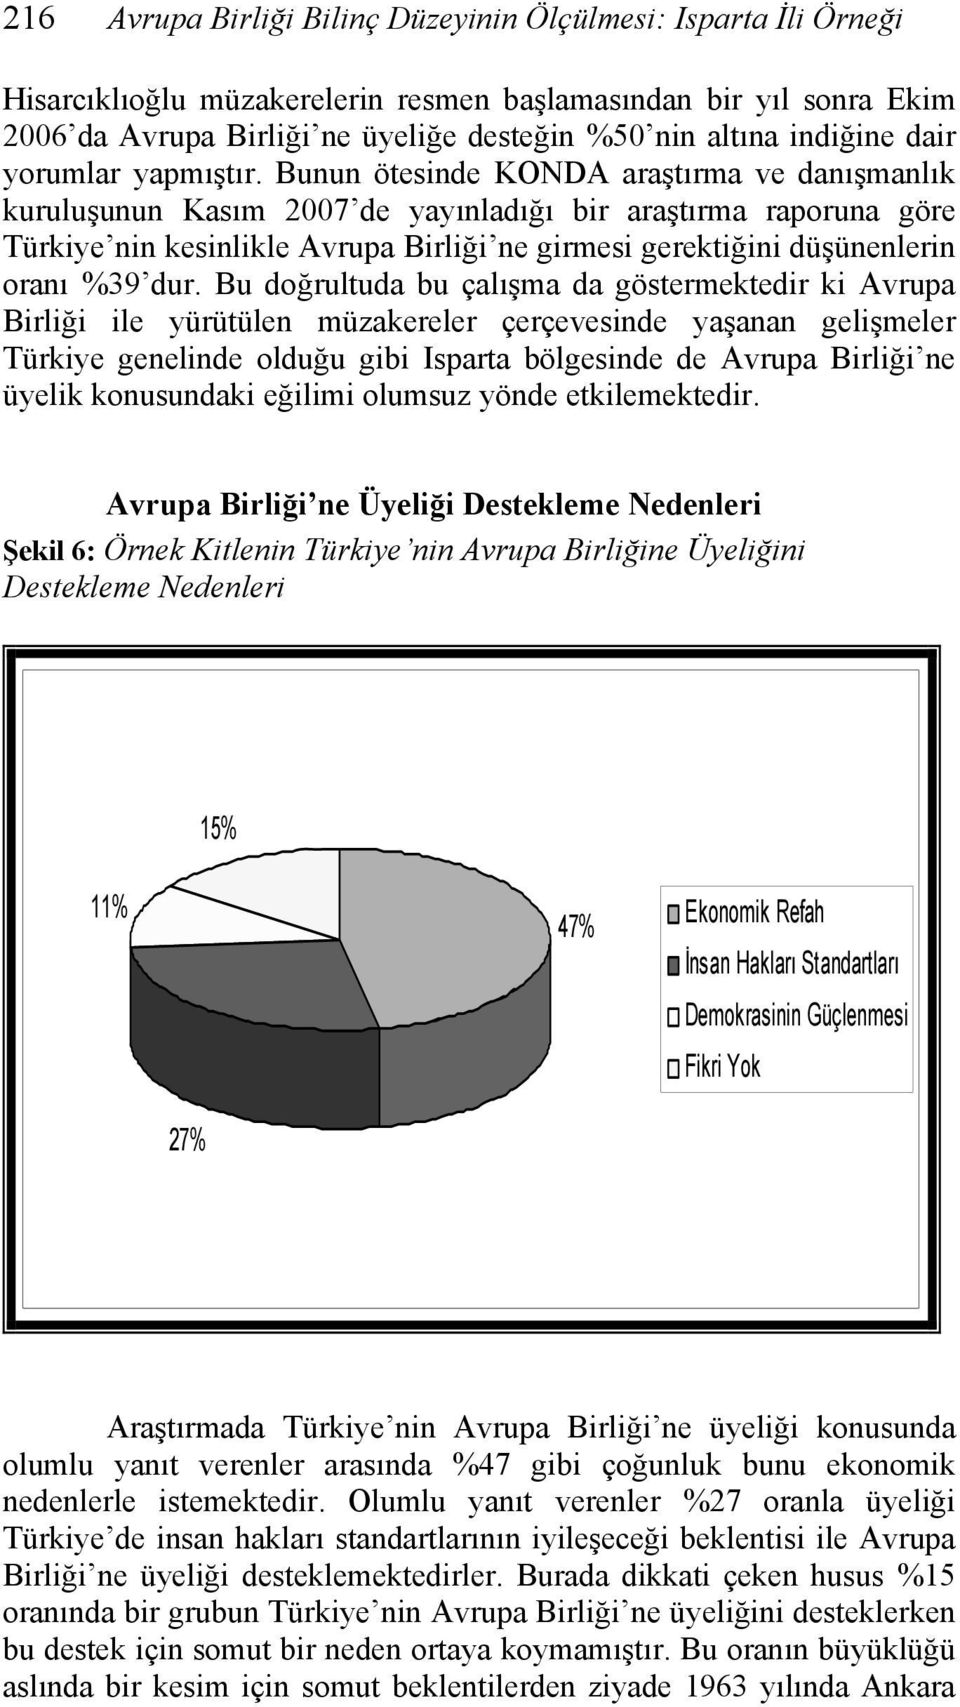 Bunun ötesinde KONDA araştırma ve danışmanlık kuruluşunun Kasım 2007 de yayınladığı bir araştırma raporuna göre Türkiye nin kesinlikle Avrupa Birliği ne girmesi gerektiğini düşünenlerin oranı %39 dur.